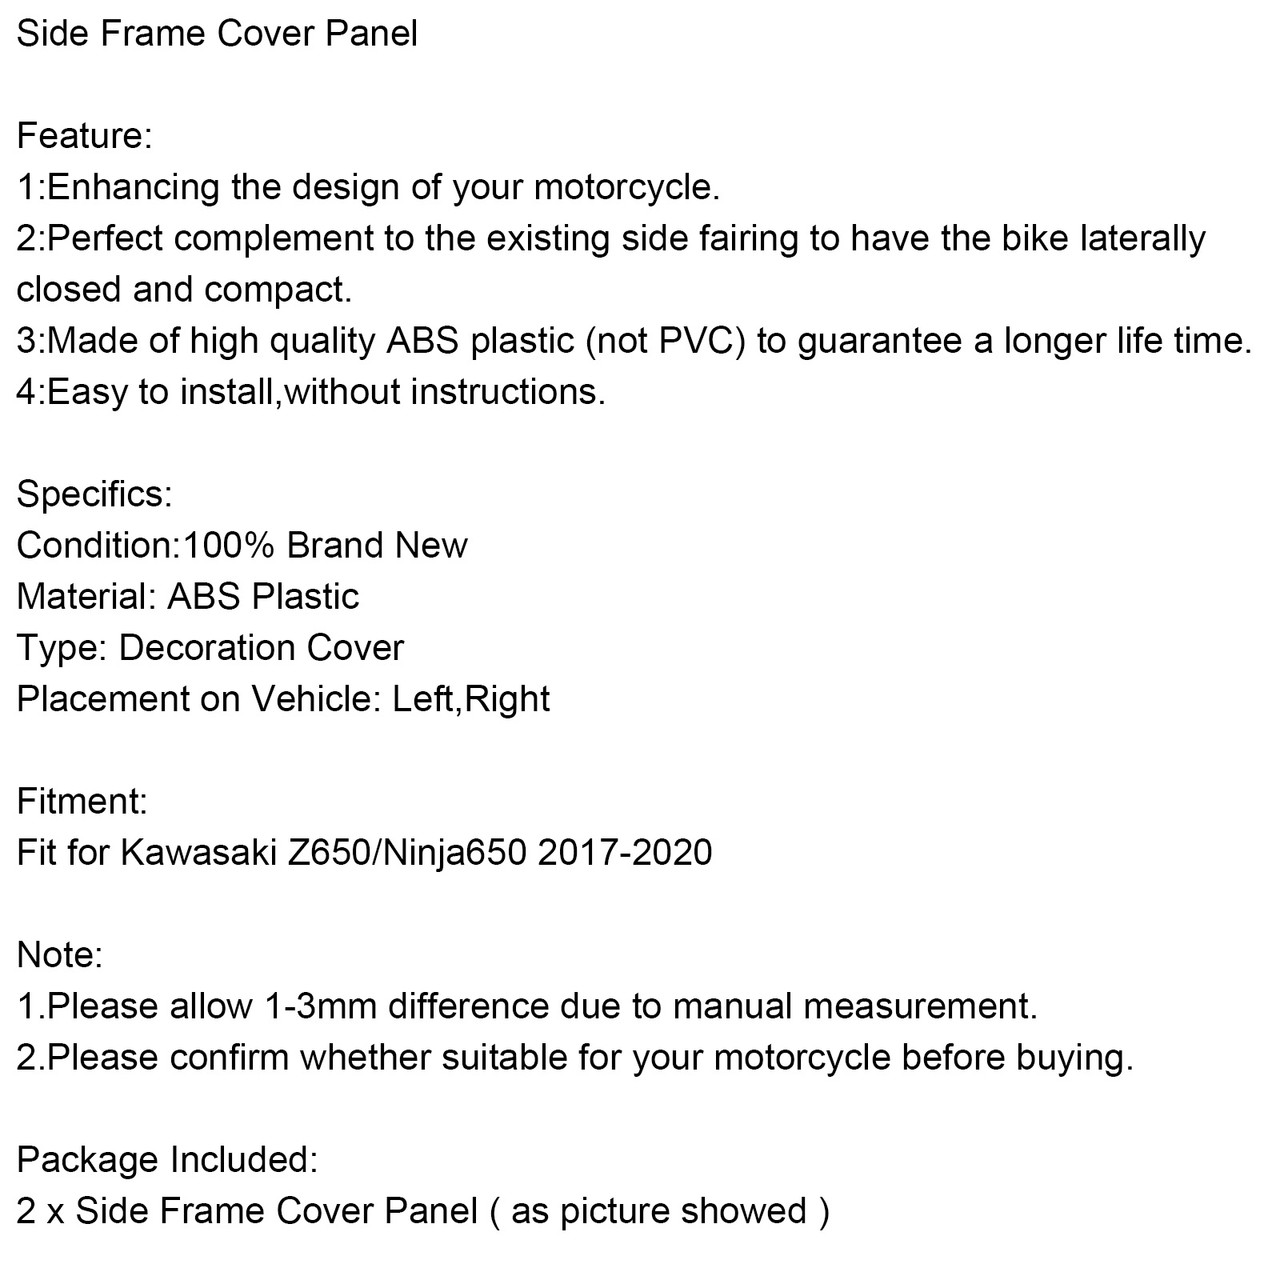 Side Frame Cover Panel Fit for Kawasaki Z650/Ninja650 2017-2020 CBN